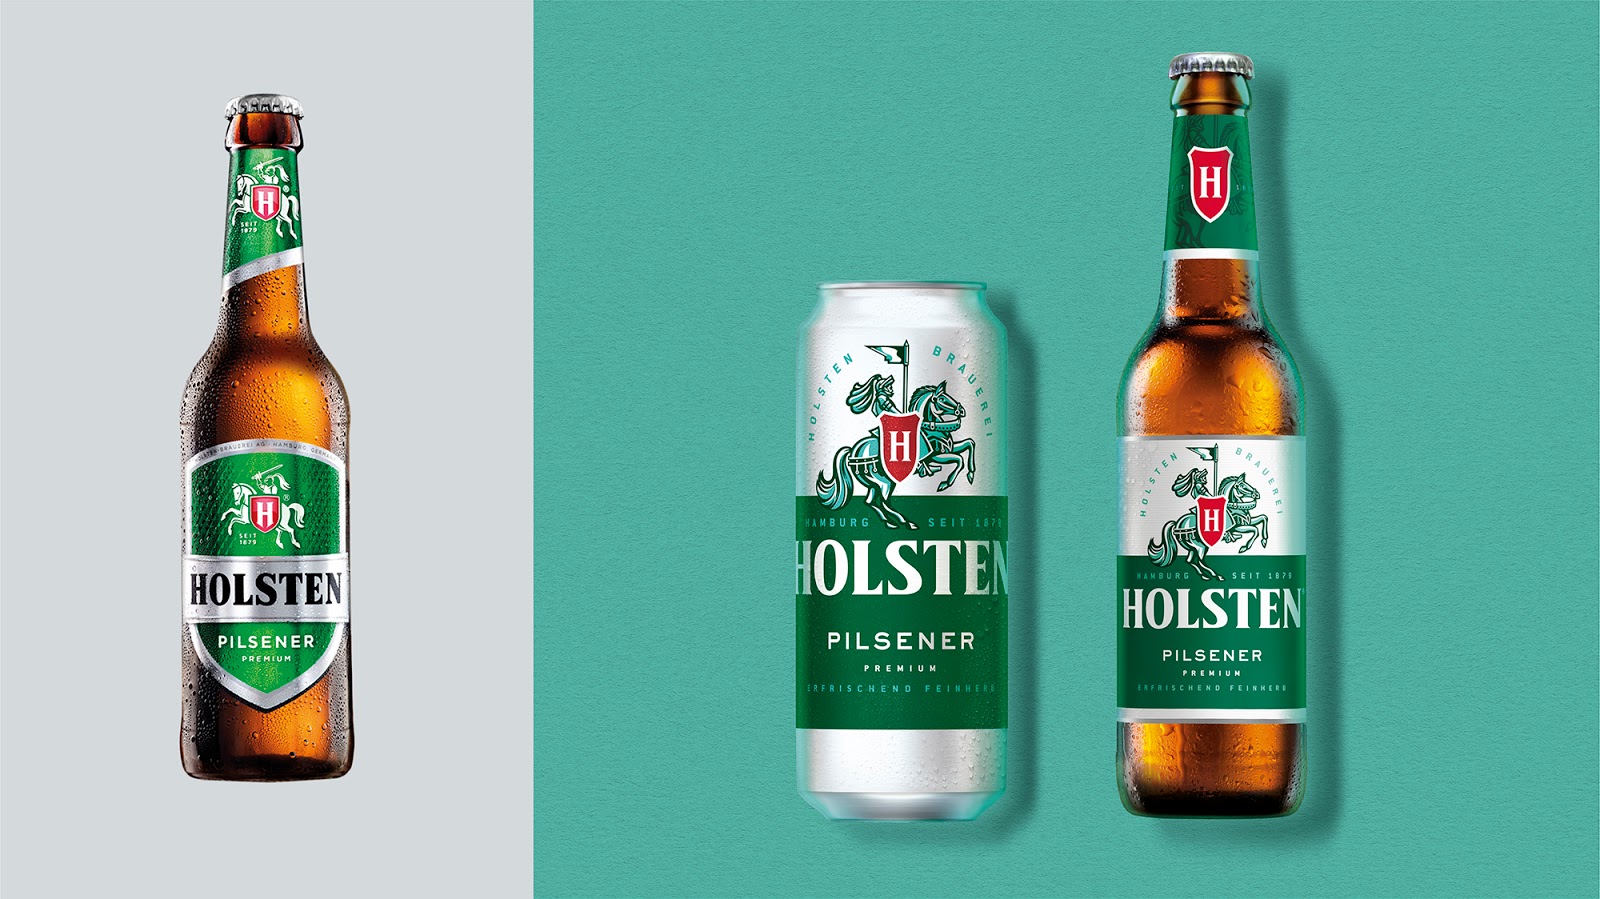  пиво, Holsten, гамбургское пиво, новый дизайн, немецкое пиво, дизайн упаковки